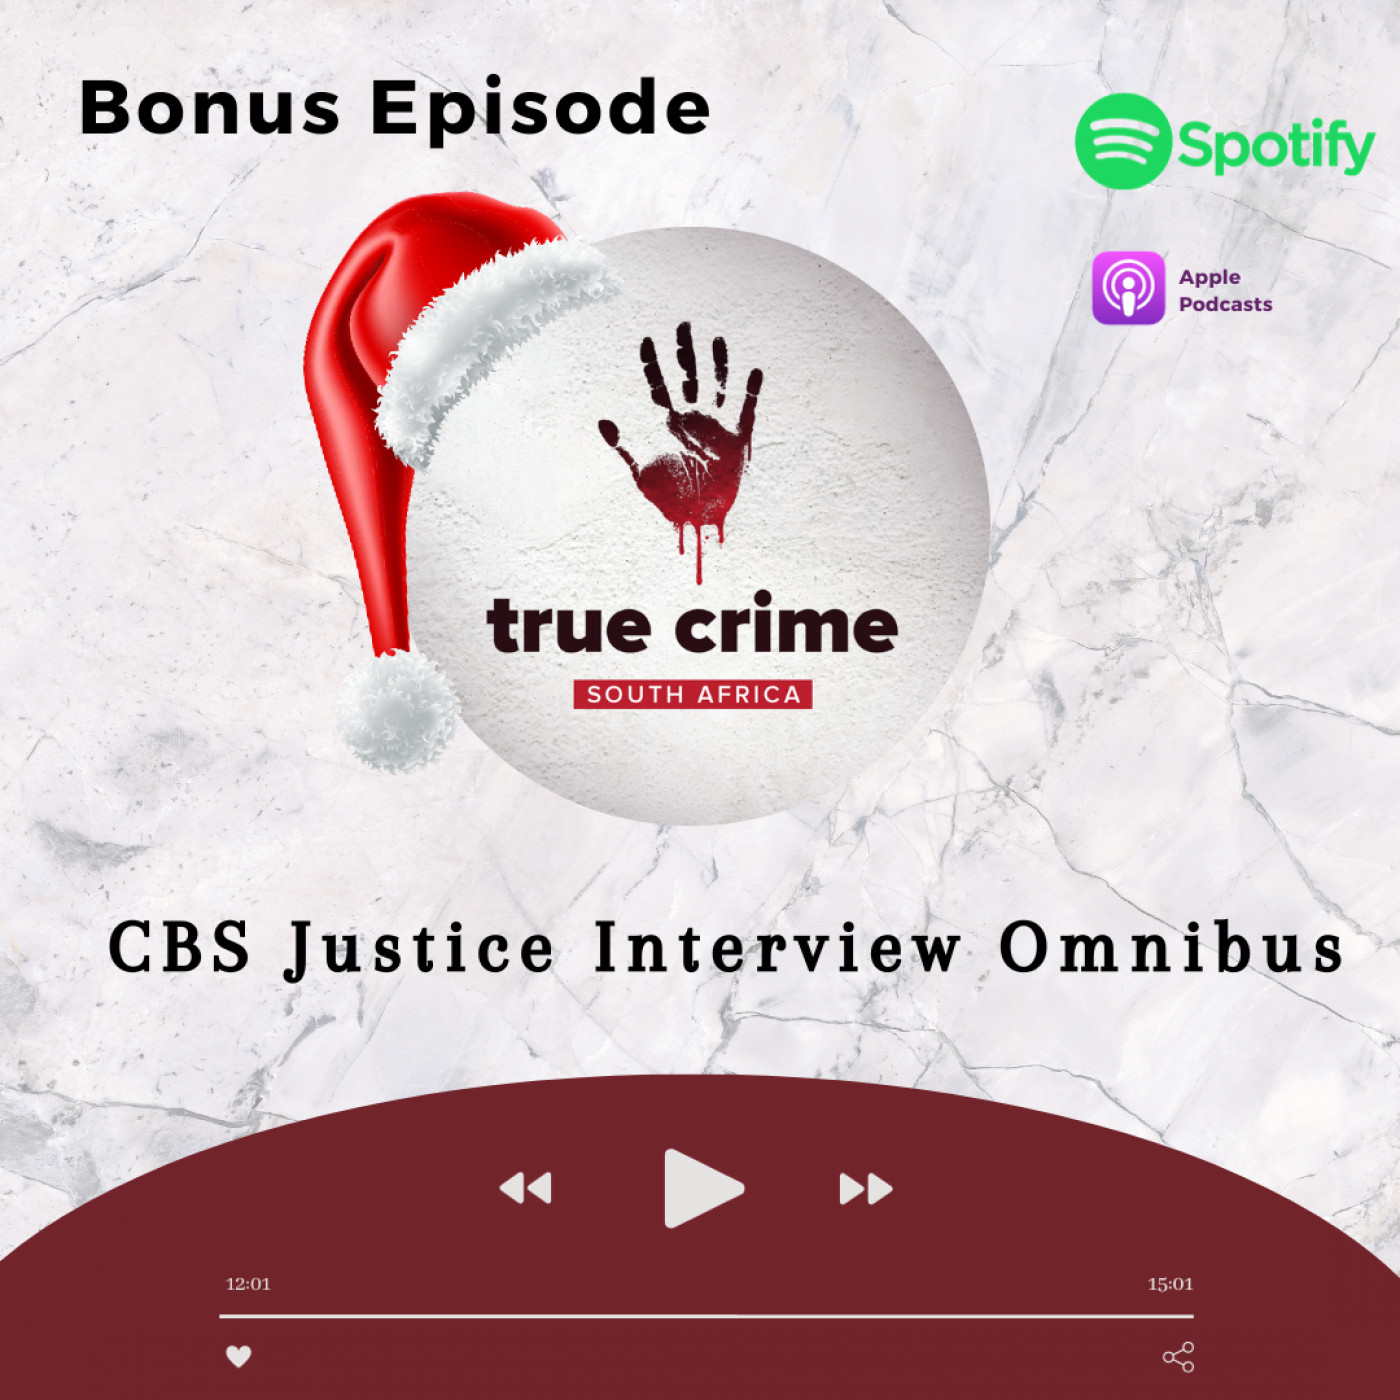 Bonus Episode CBS Justice Interview Omnibus